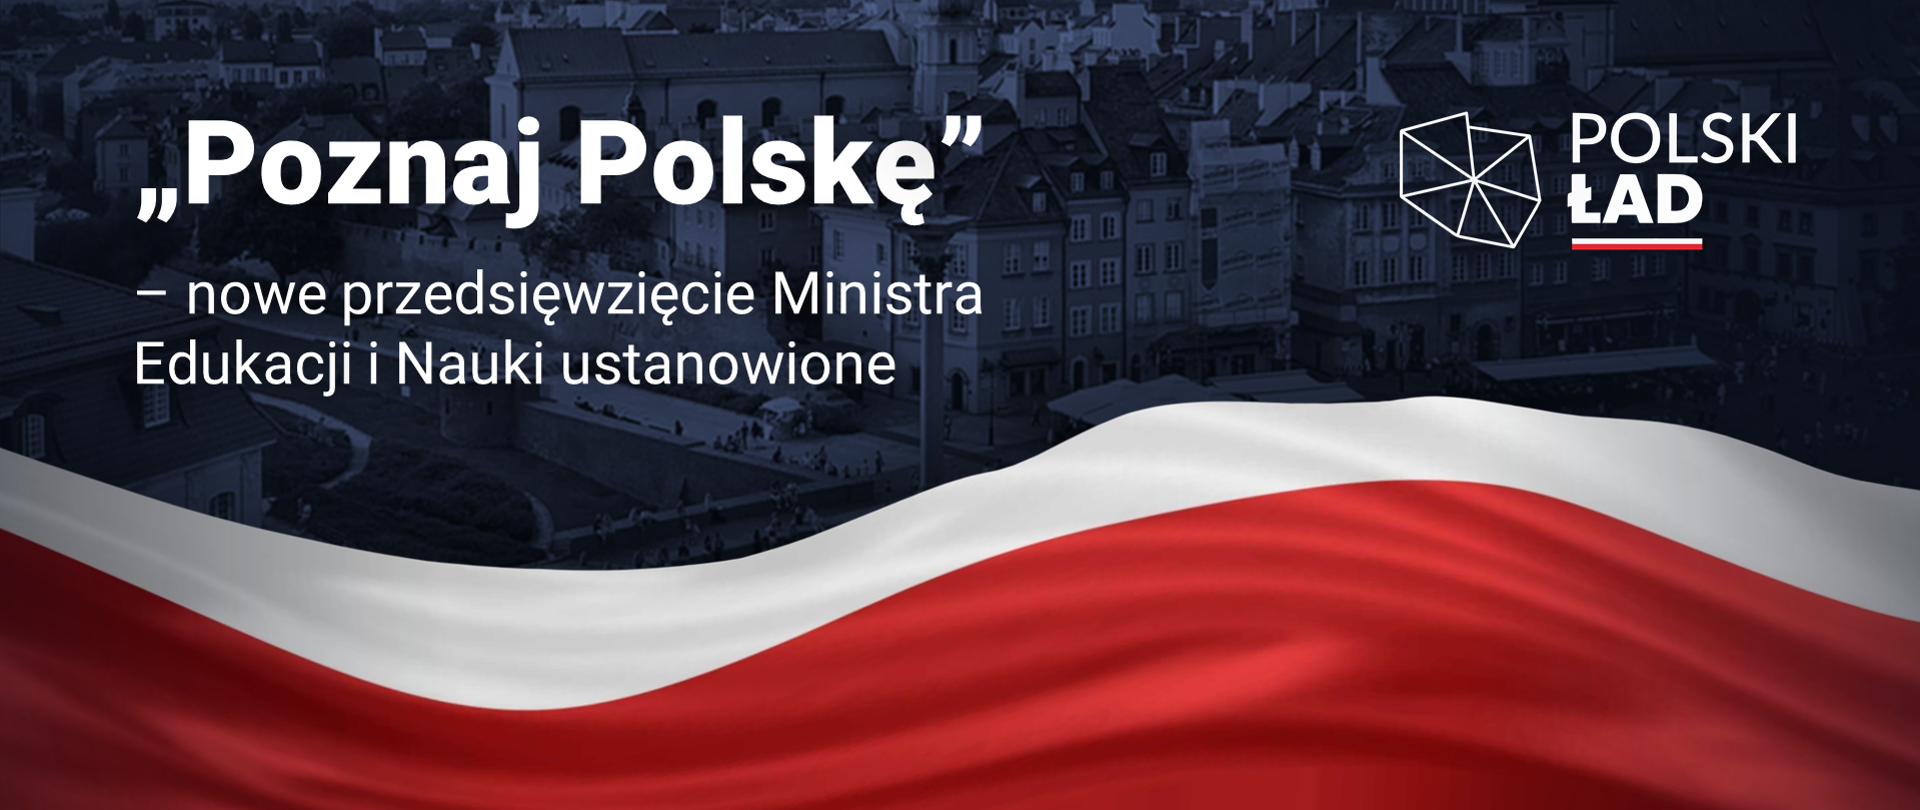 Poznaj Polskę - Polski Ład